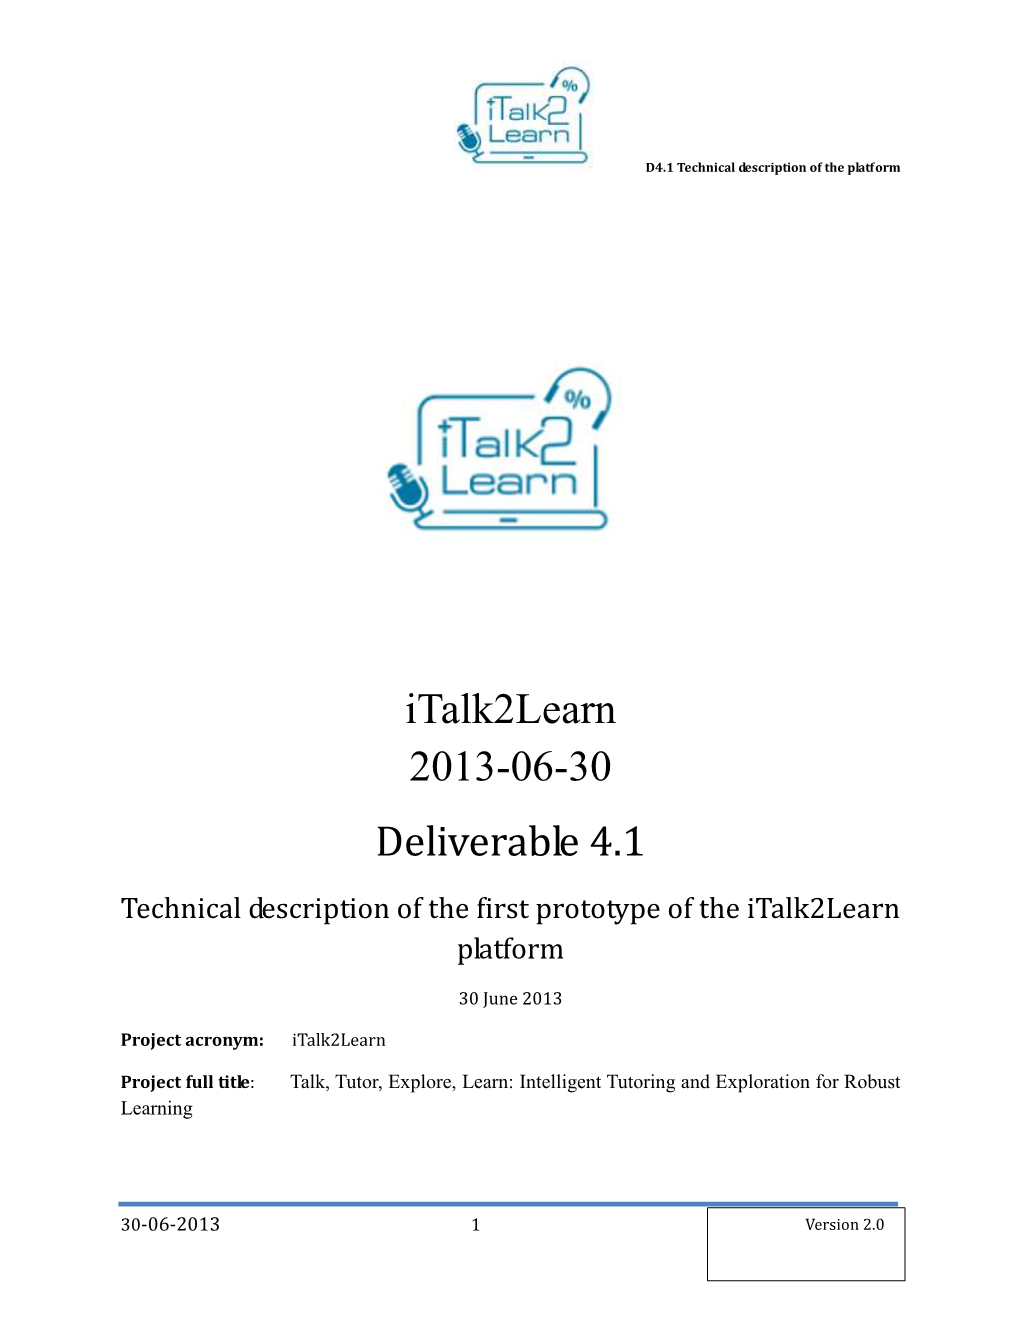 D4.1 Technical Description of the Platform